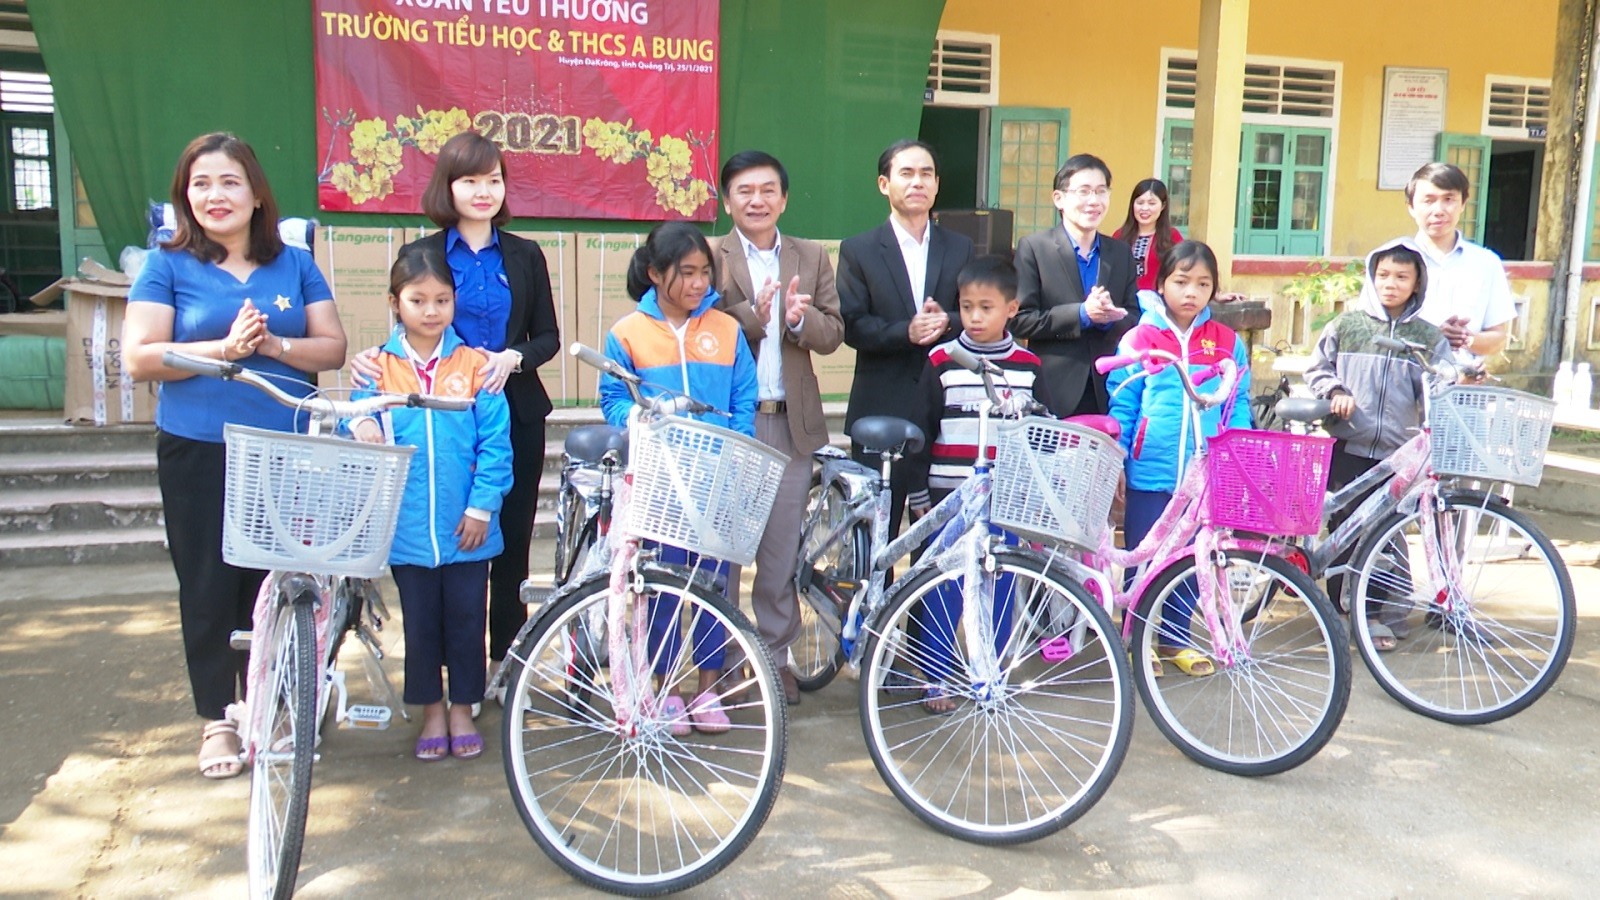 Công ty Thủy điện Quảng Trị trao tặng xe đạp cho các em học sinh Trường TH và THCS A Bung - Đakrông